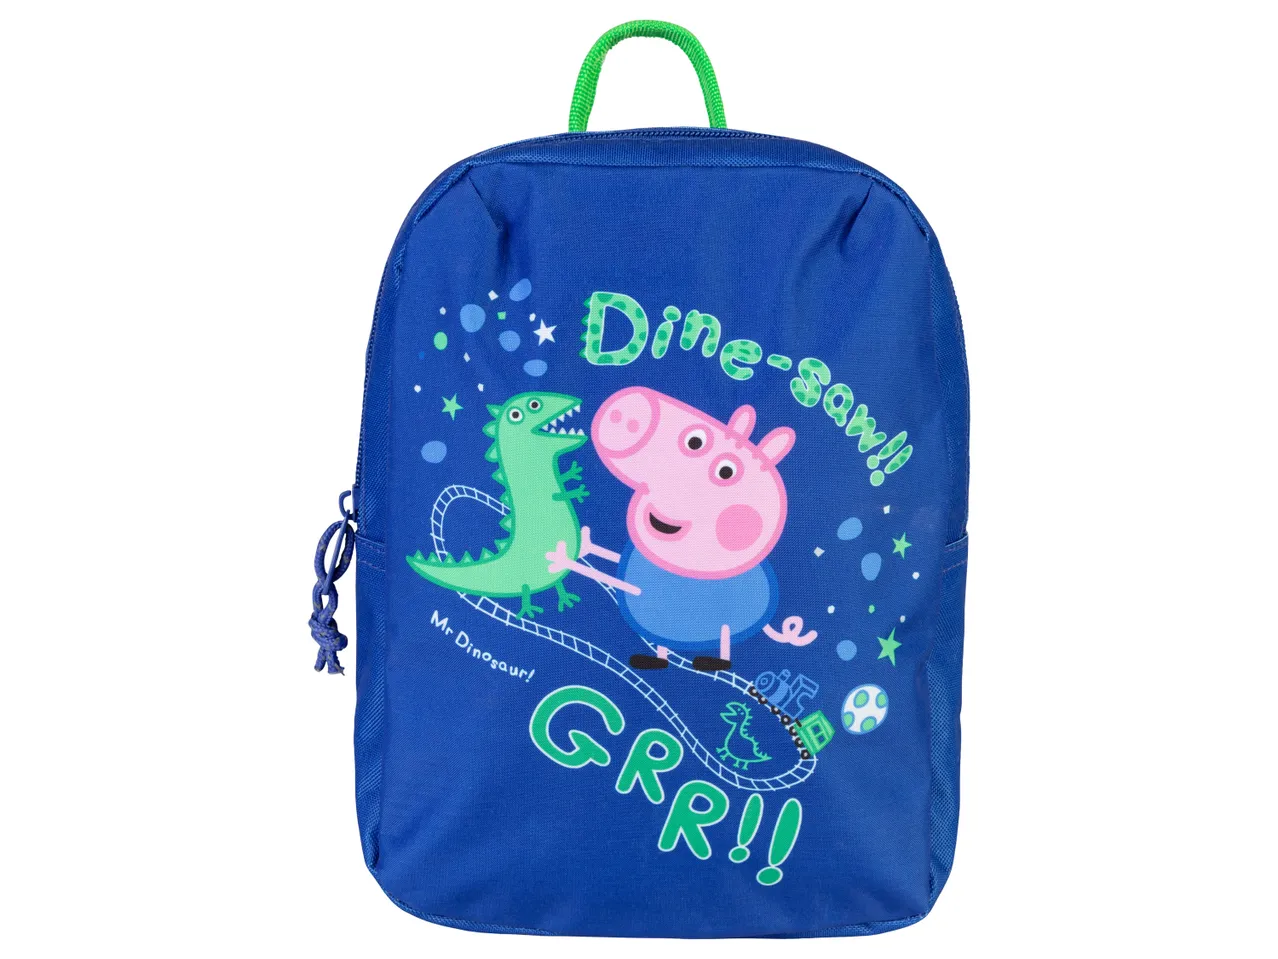 Zaino o borsa per bambini Peppa Pig , prezzo 4.99 EUR